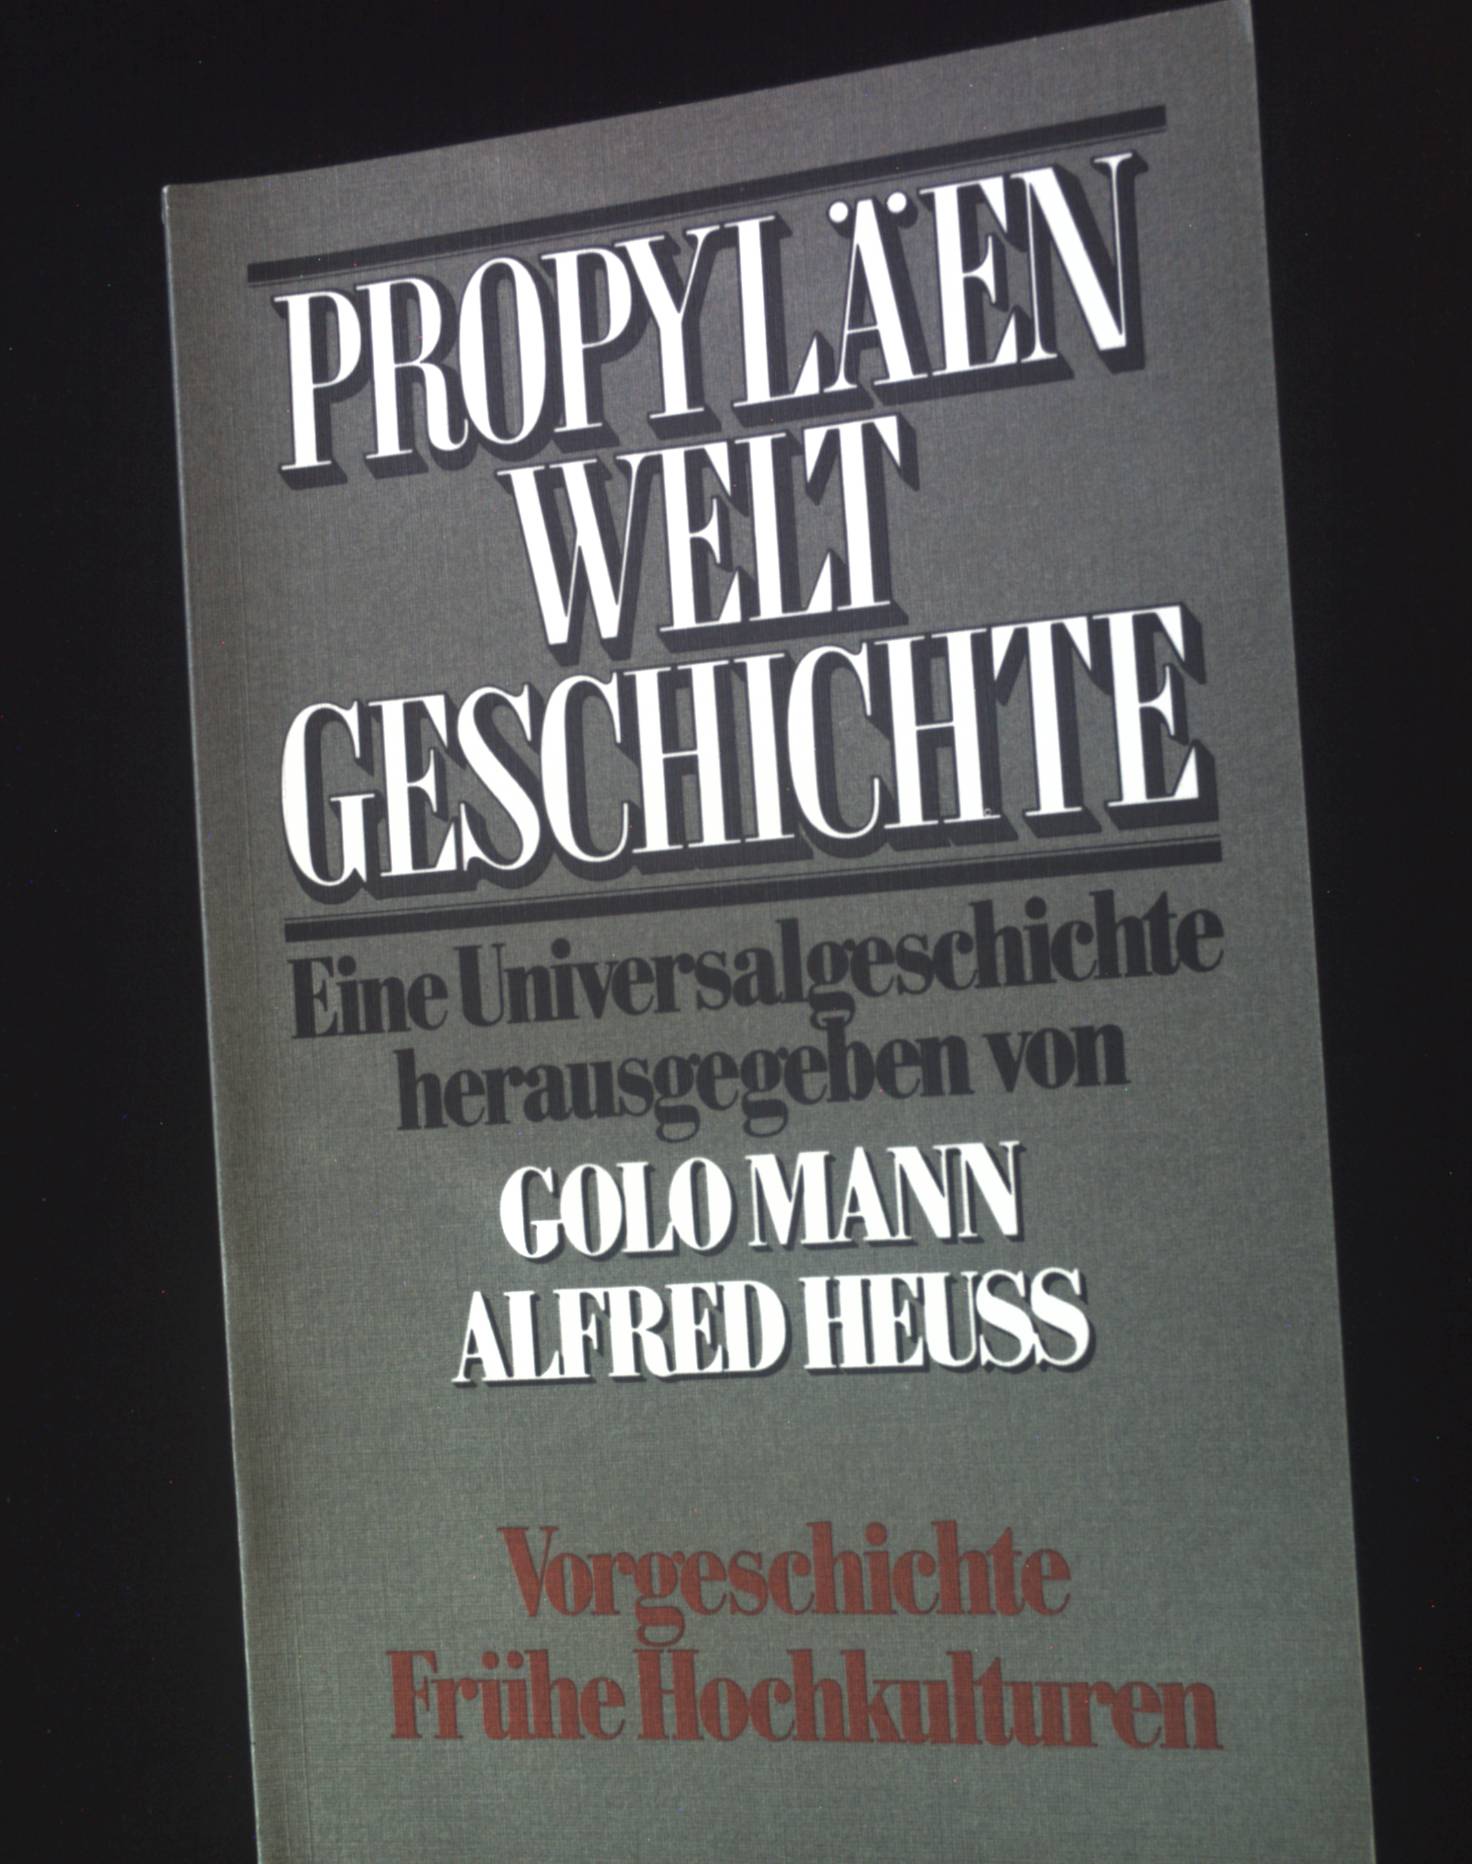 Vorgeschichte, frühe Hochkulturen 2. Halbband. Propyläen Weltgeschichte 1. Band. - Soden, Wolfram von (Mitwirkender)